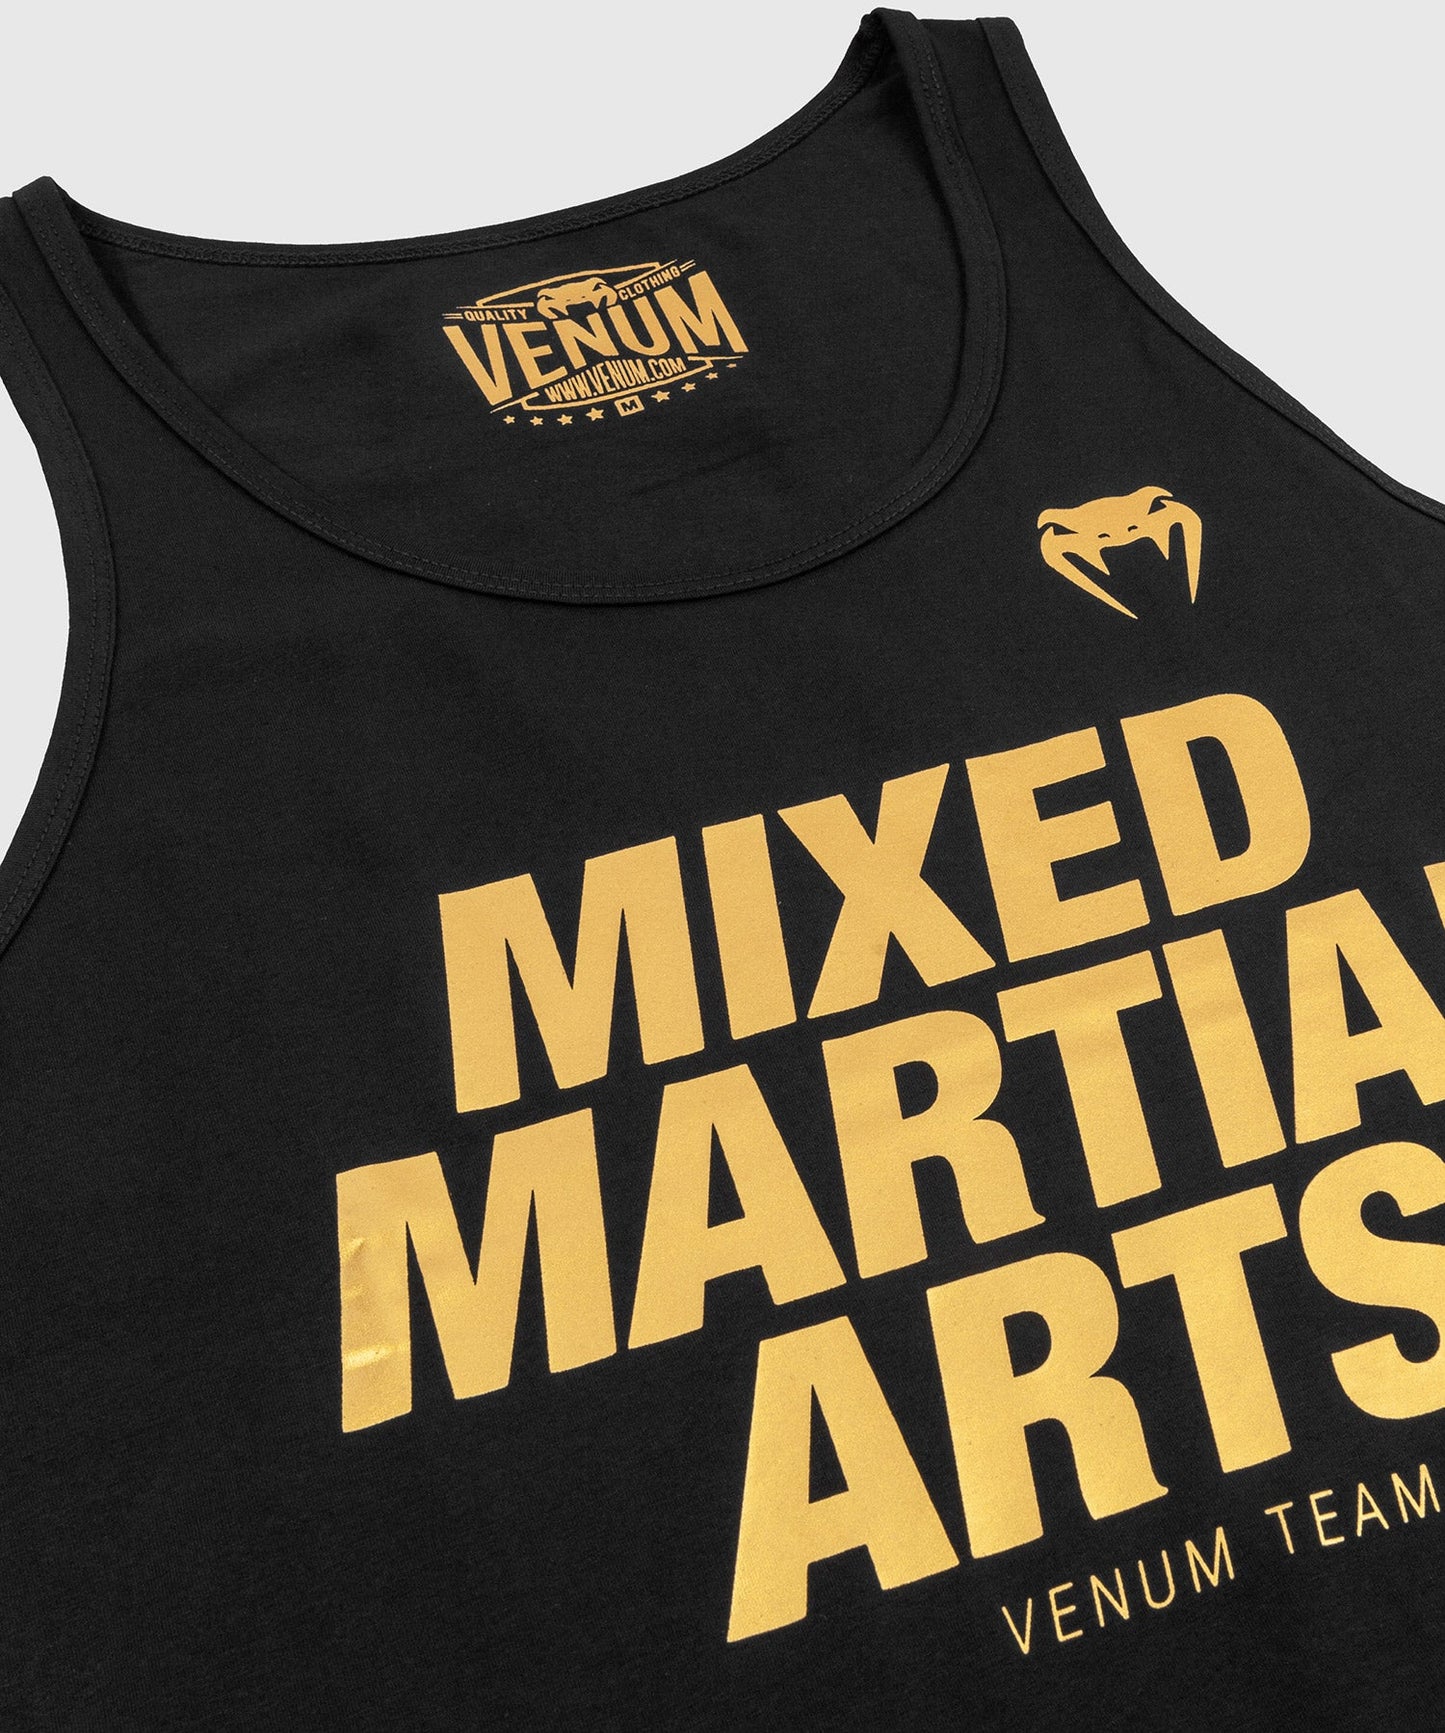 Venum MMA VT Tank Top - Black/Gold